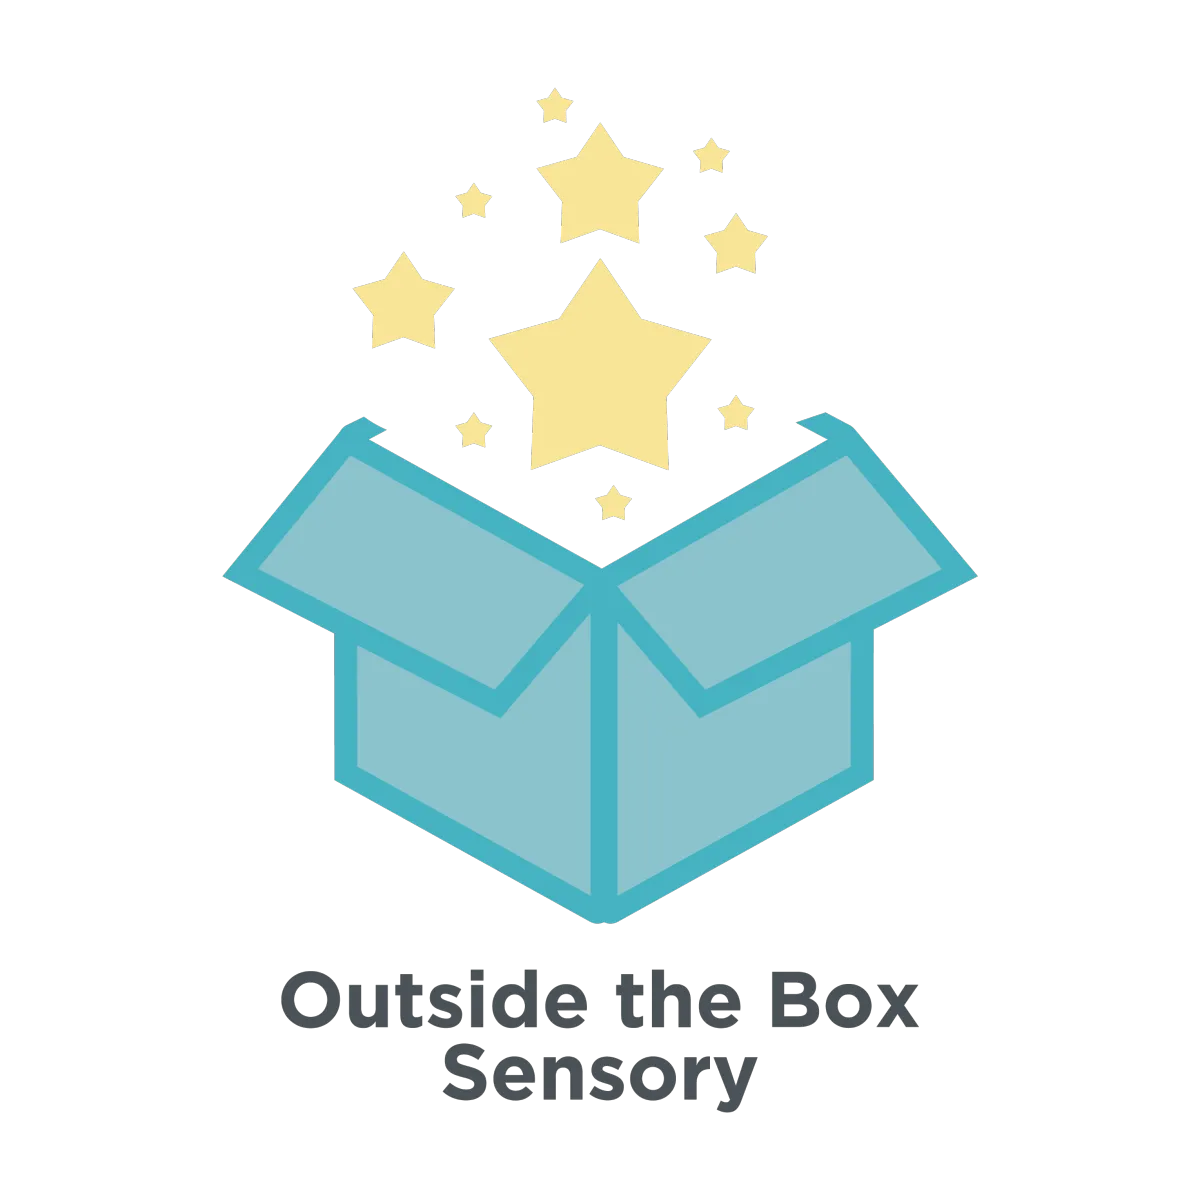 Outside the Box Sensory logo